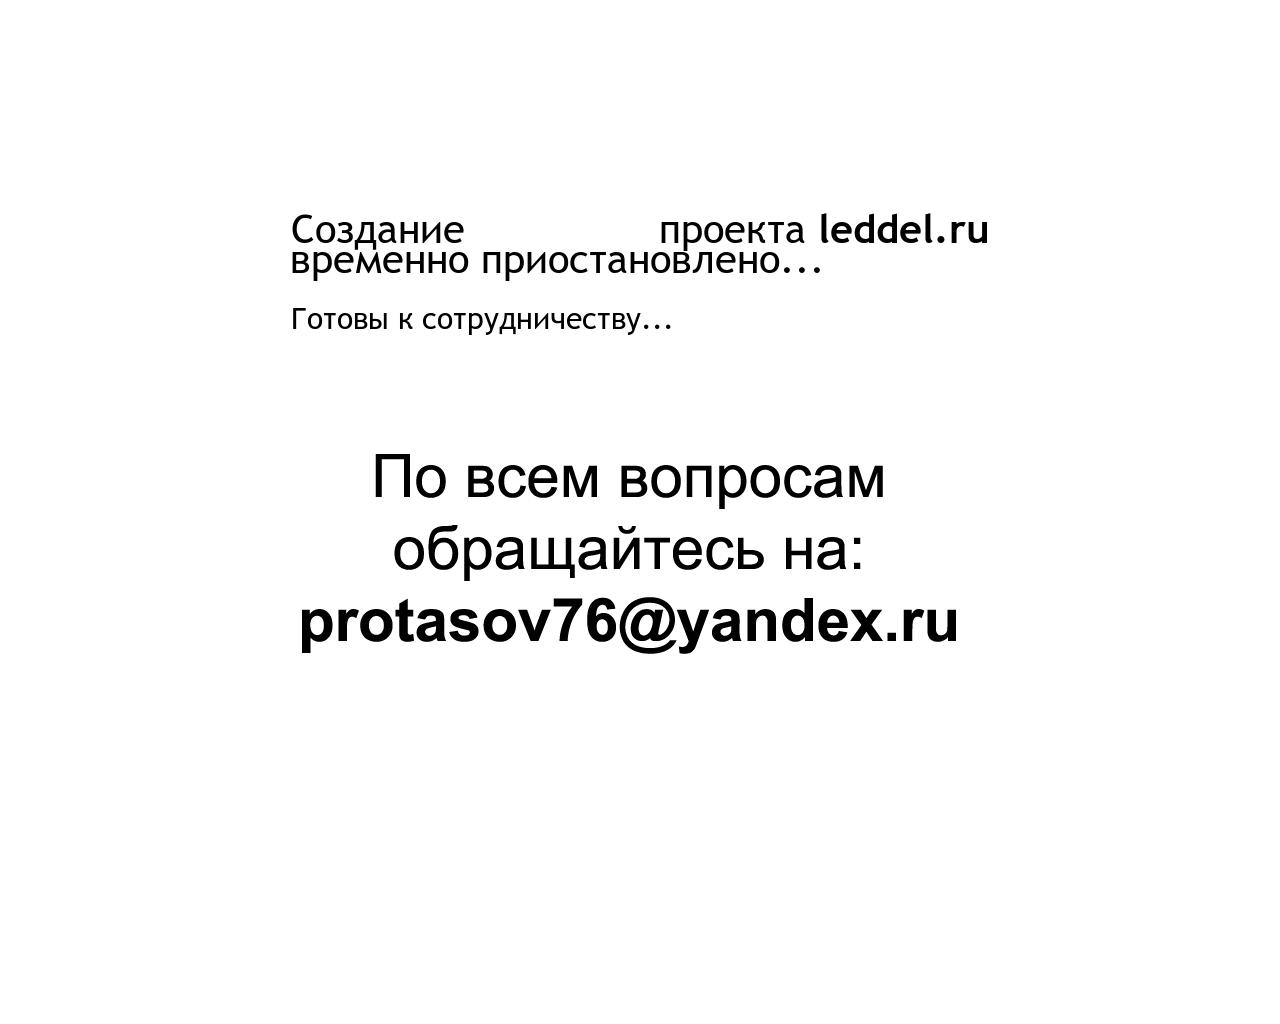 Изображение сайта leddel.ru в разрешении 1280x1024